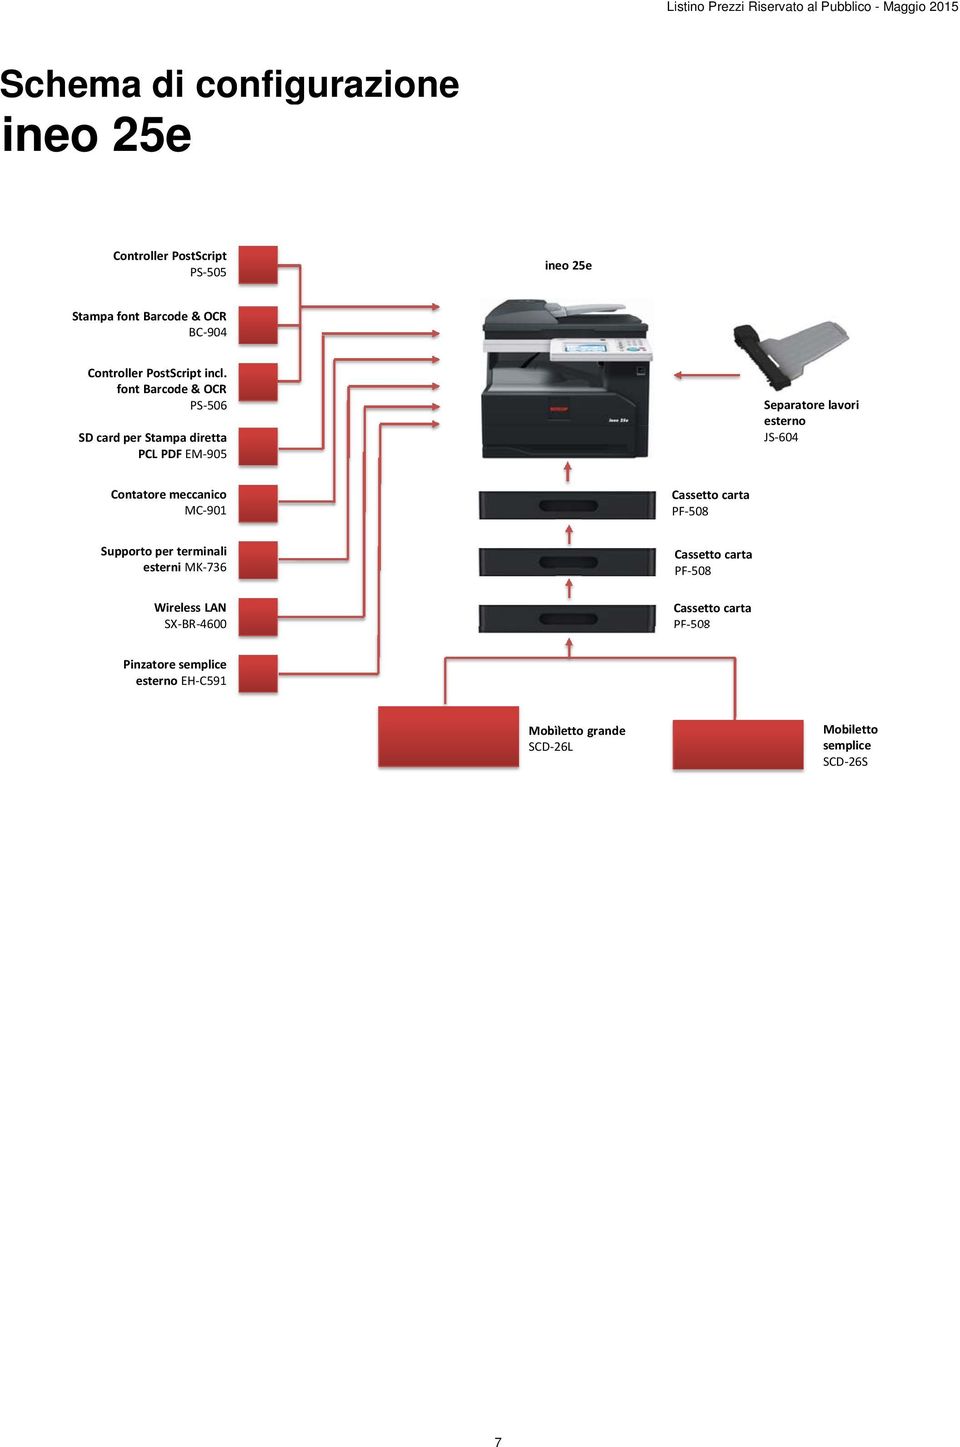 font Barcode & OCR PS 506 SD card per Stampa diretta PCL PDF EM 905 Separatore lavori esterno JS 604 Contatore